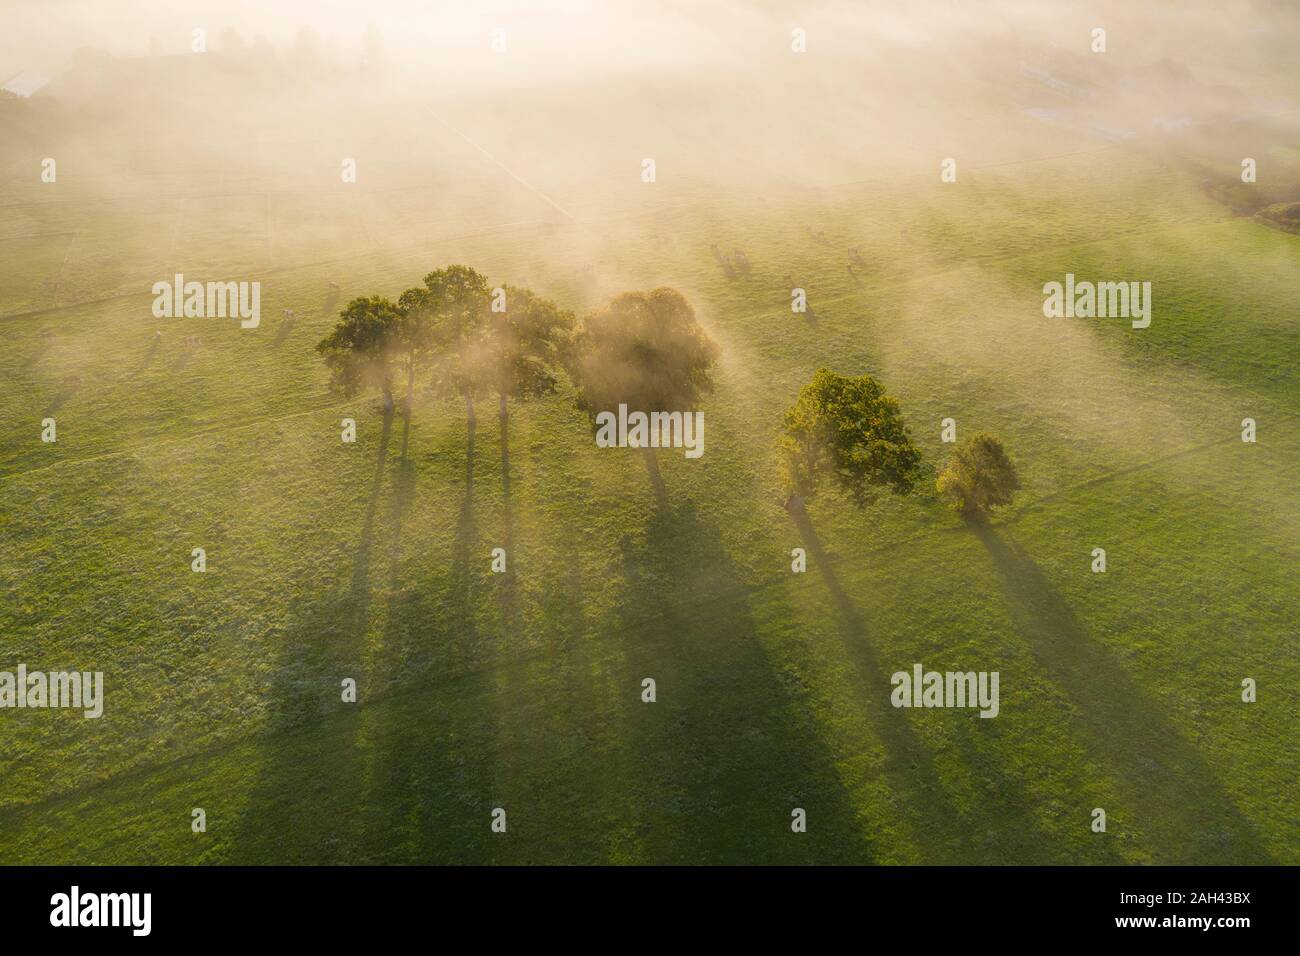 In Germania, in Baviera, Greiling, vista aerea del campo e alberi nella nebbia di sunrise Foto Stock